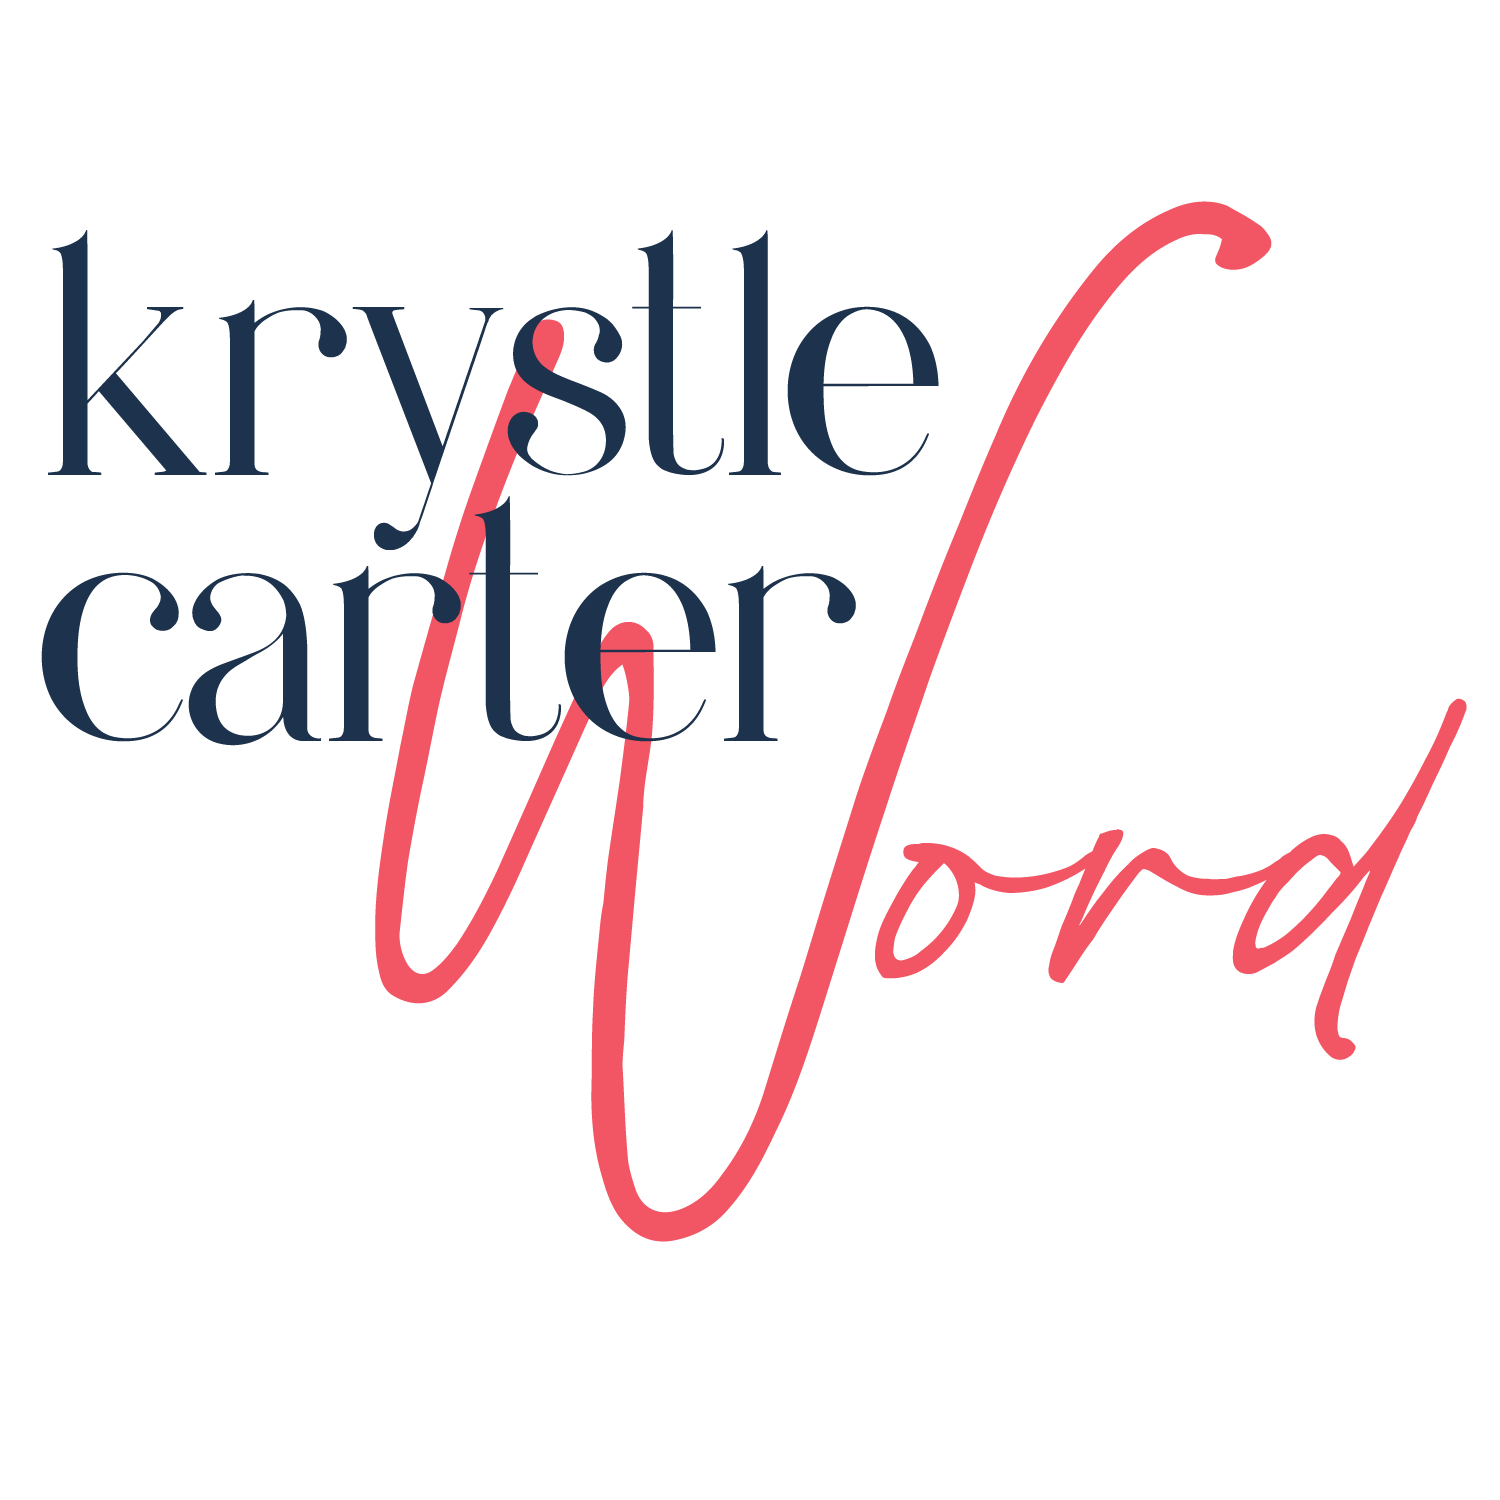 Krystle Carter Word